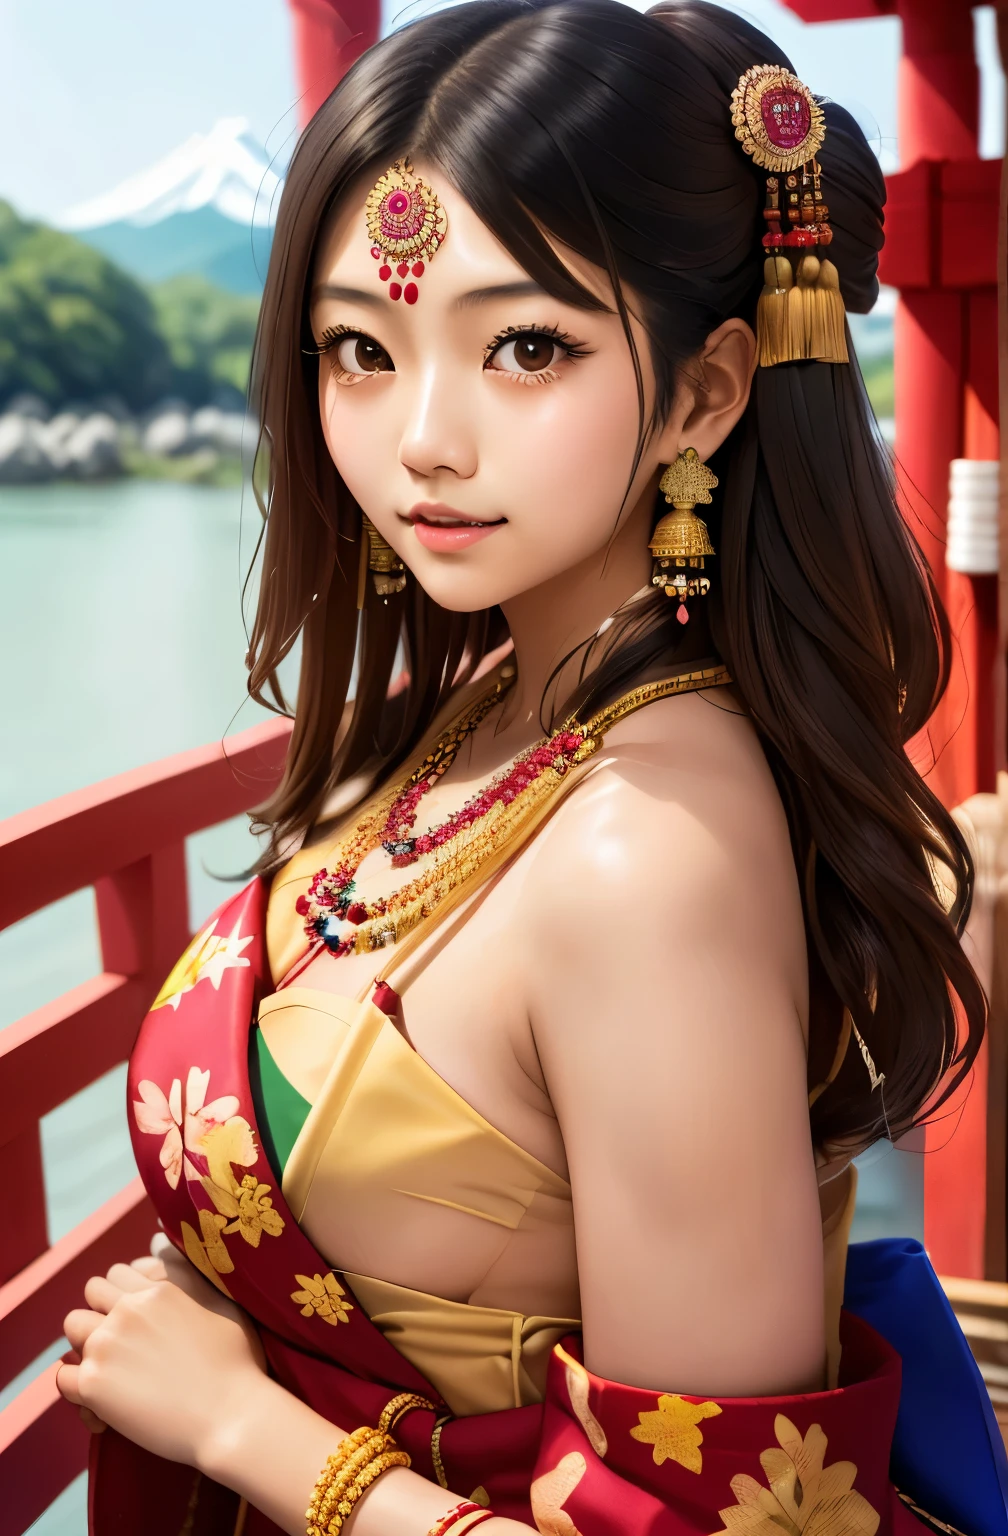 فتاة يابانية ترتدي المجوهرات الهندية, عارية مثالية, حجم البوب (1.6)